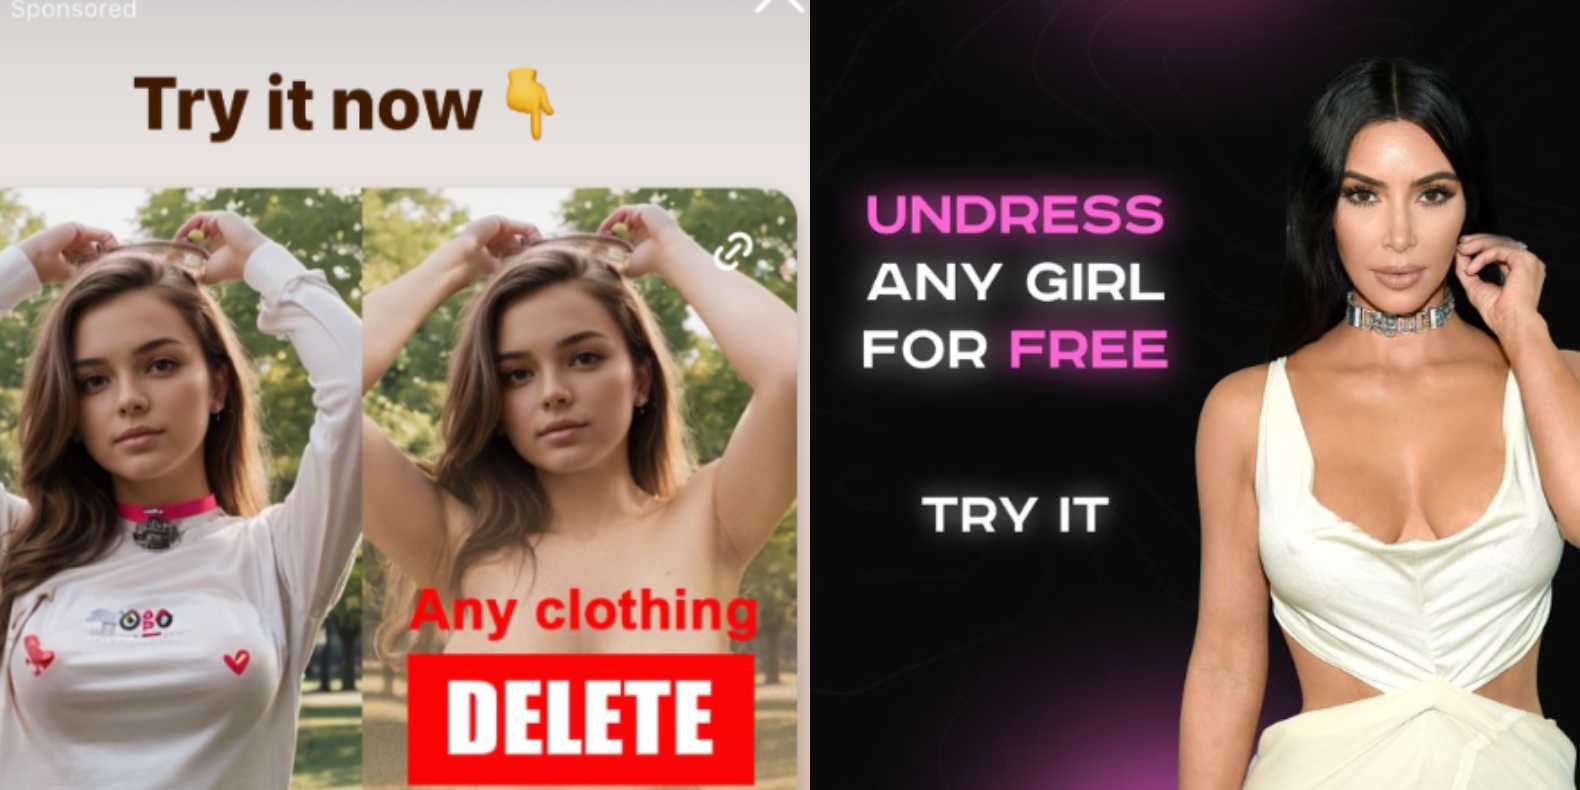 Instagram’ın, İnsanların Çıplak Deepfake Fotoğraflarını Oluşturan Uygulamaların Reklamını Yaptığı Ortaya Çıktı